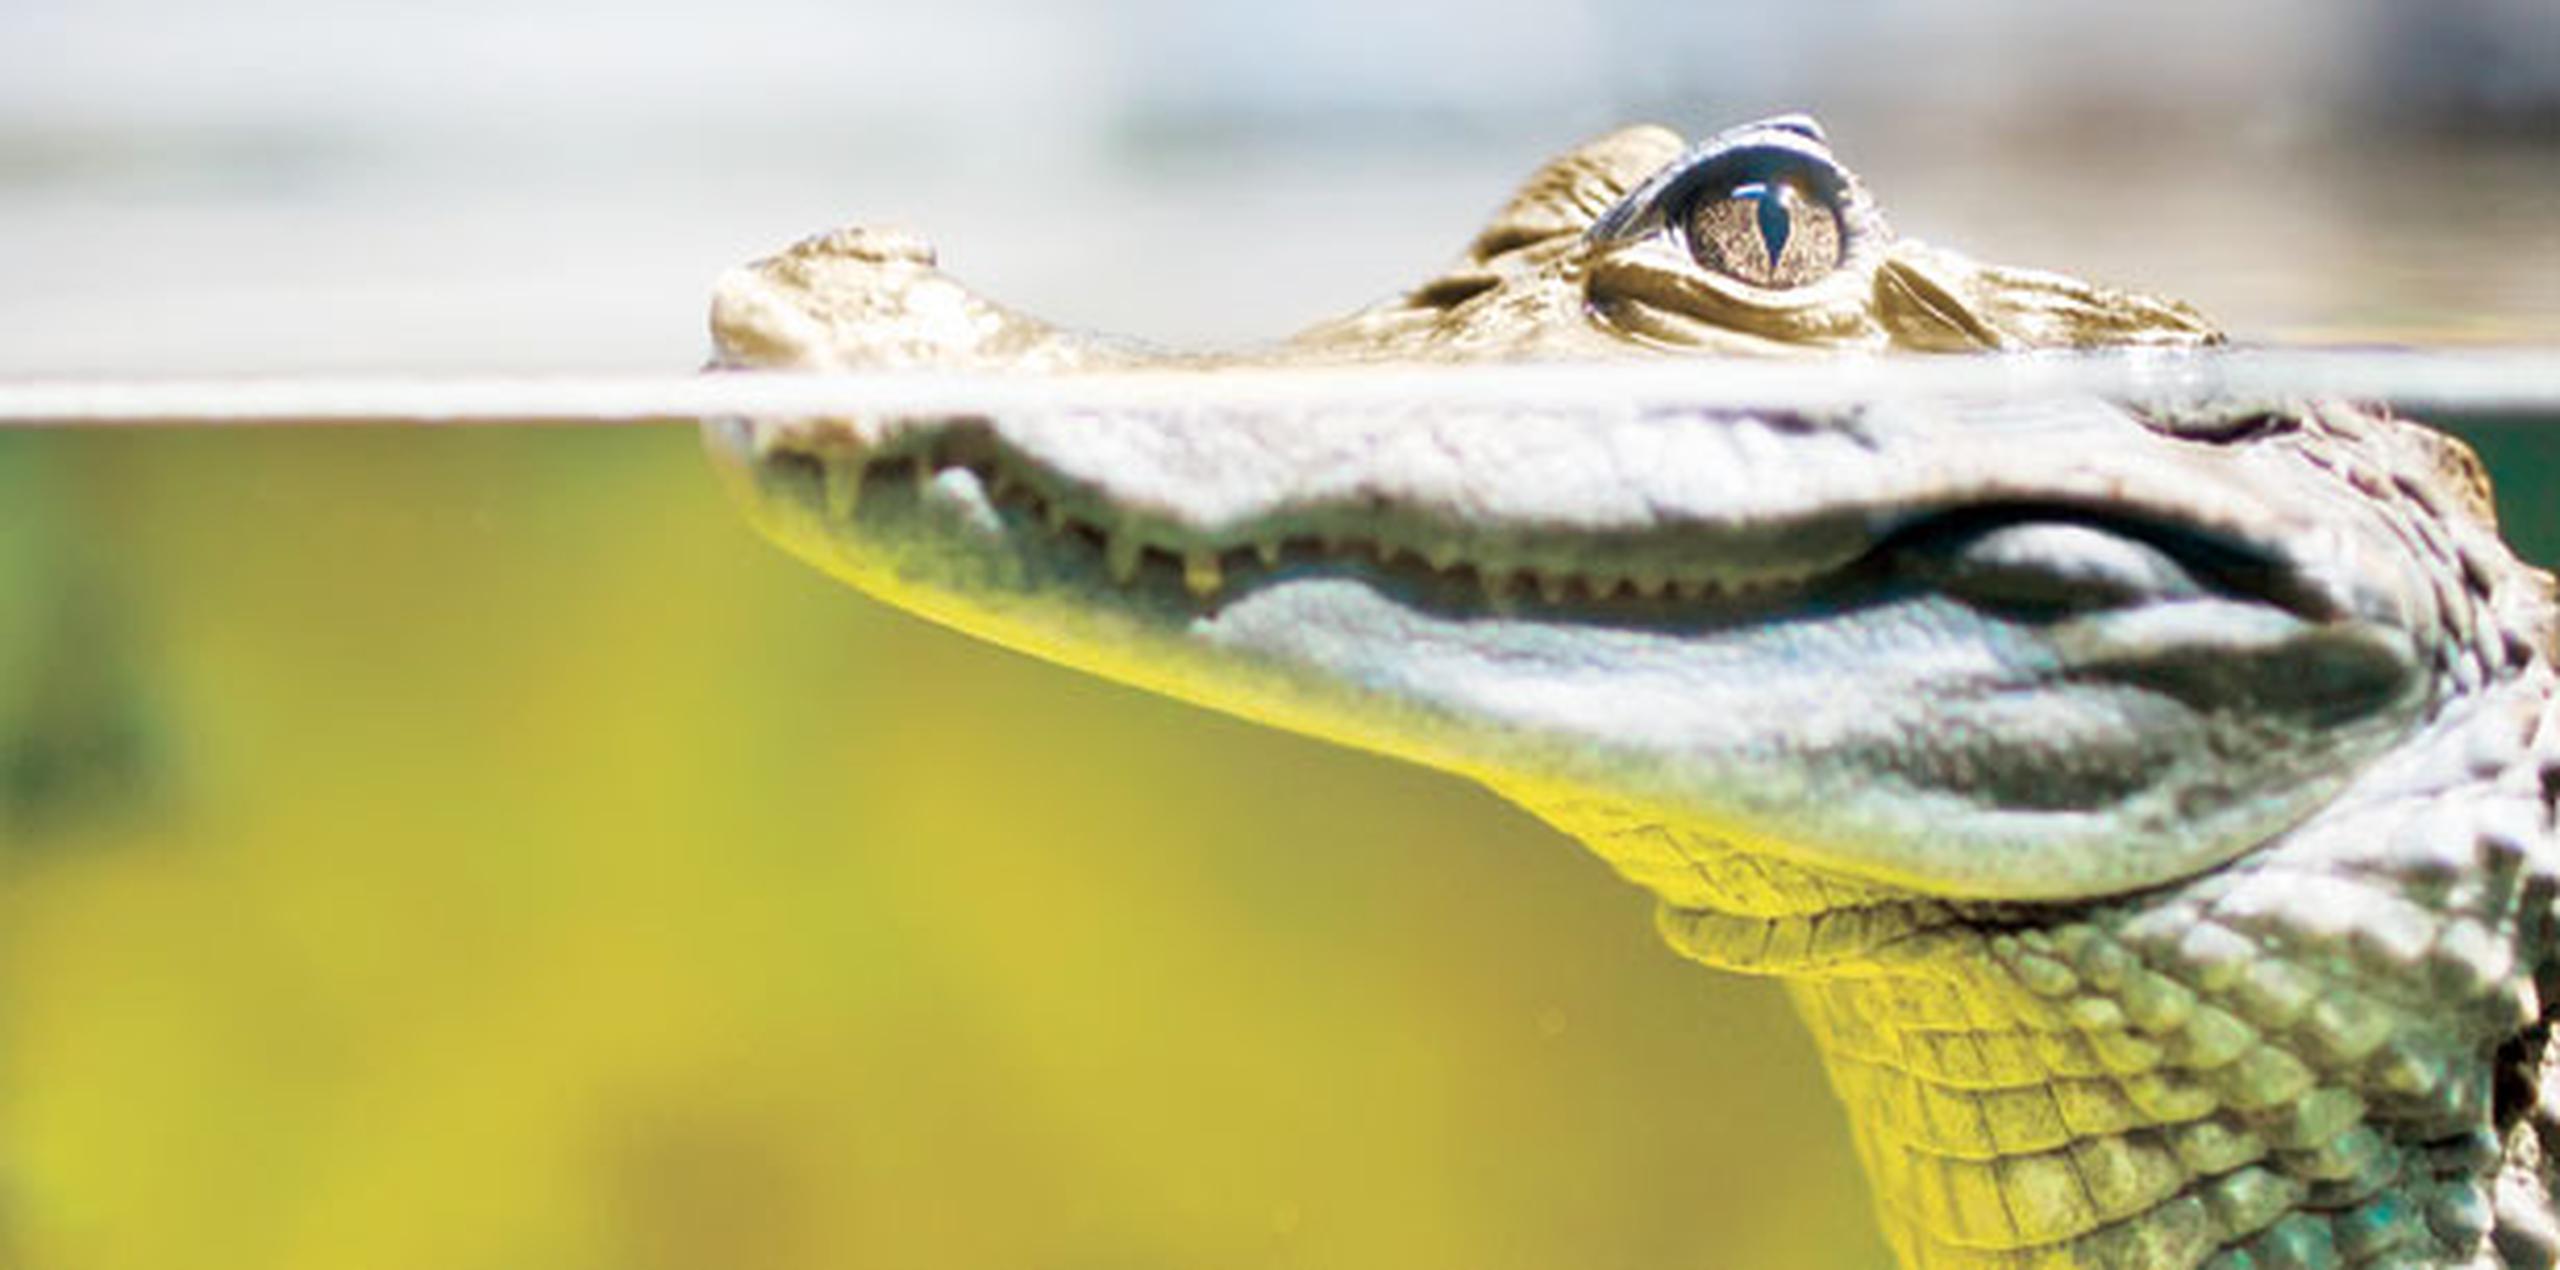 De acuerdo con un folleto de FWC sobre la interacción entre humanos y caimanes, desde 1948 hay más de 20 casos documentados de muerte de personas a causa de ataques de esos reptiles en Florida. (Archivo)